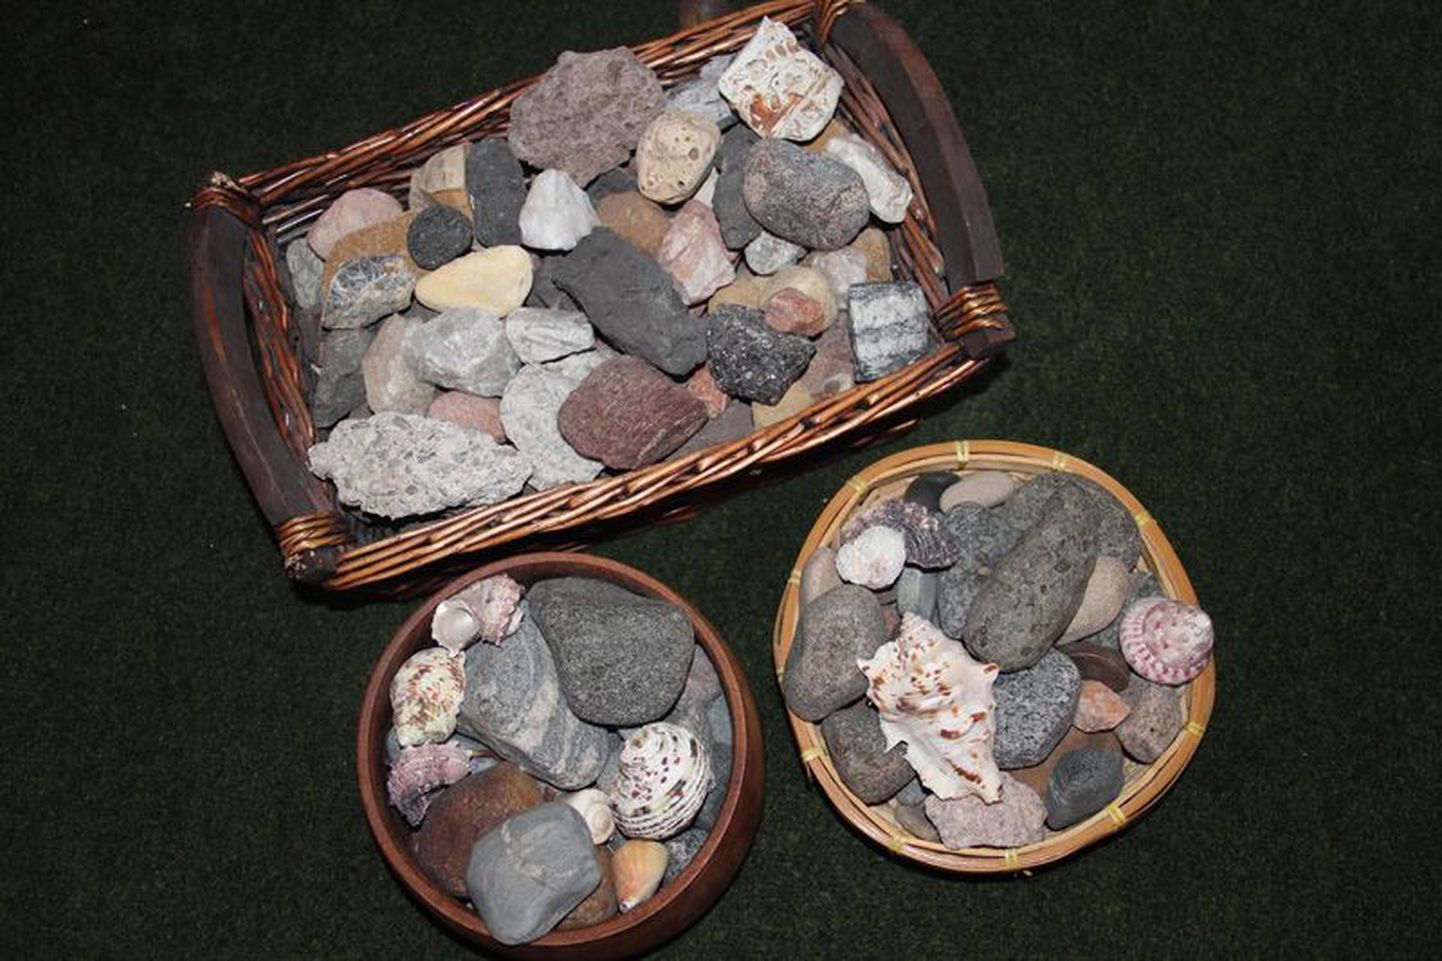 Kui paljud inimesed koguvad marke, vanaraha või kleebiseid, siis Tapa muuseumi juhataja Tiina Paasi hobiks on hoopis kive koguda.